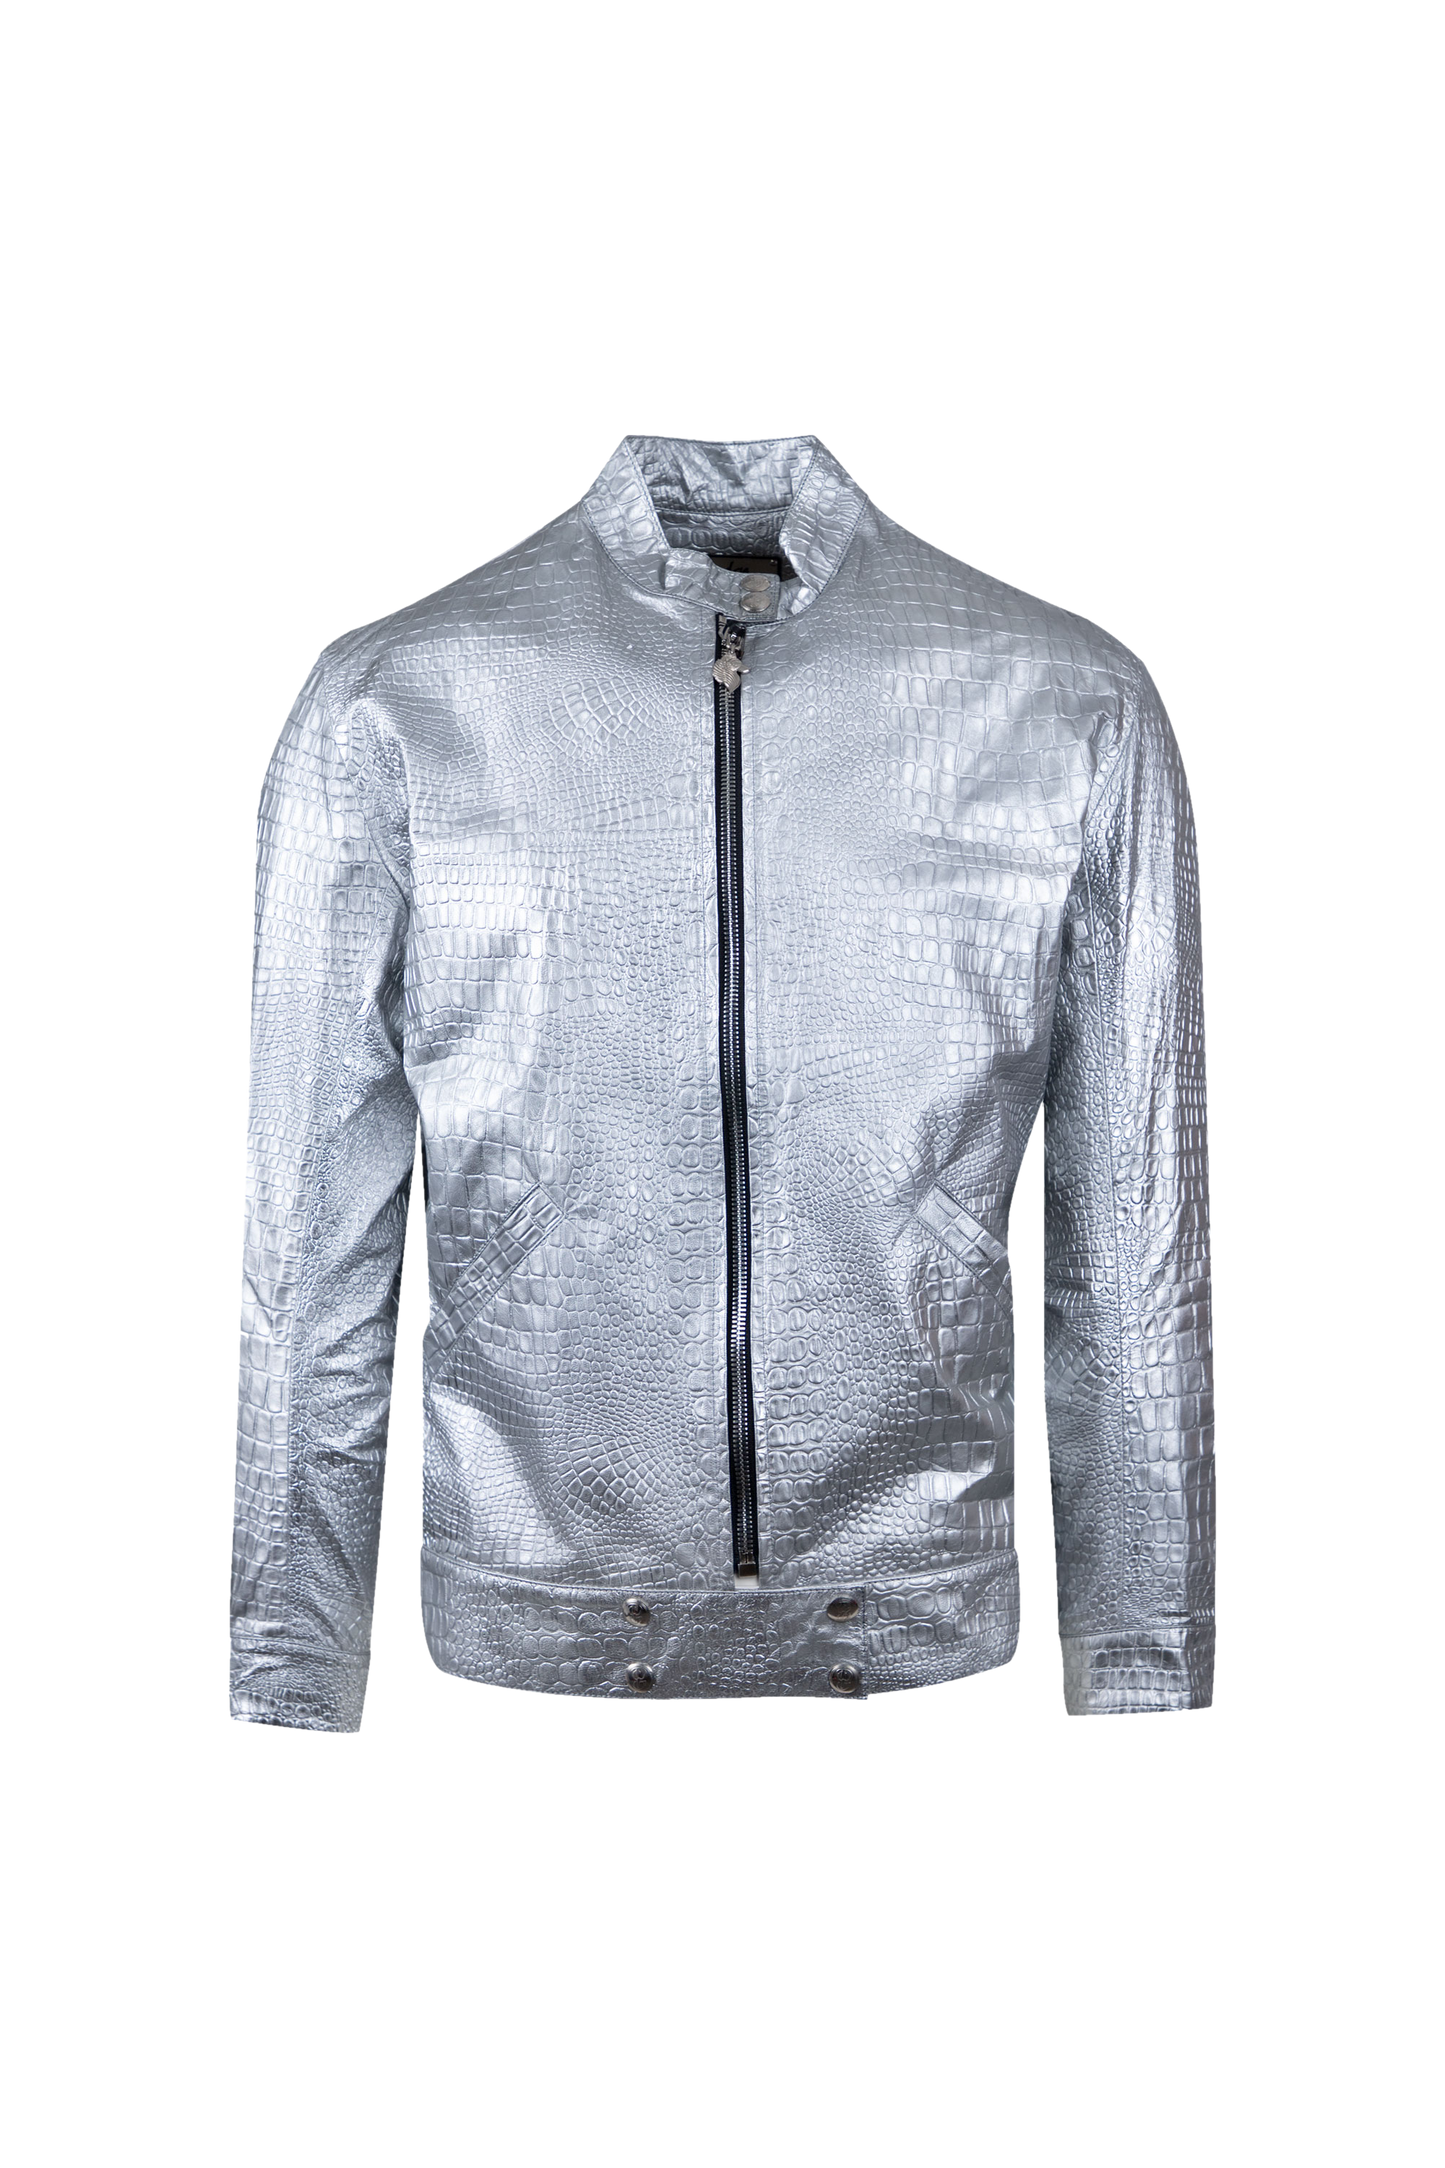 Dulce Bestia™ Silver Leather Jacket